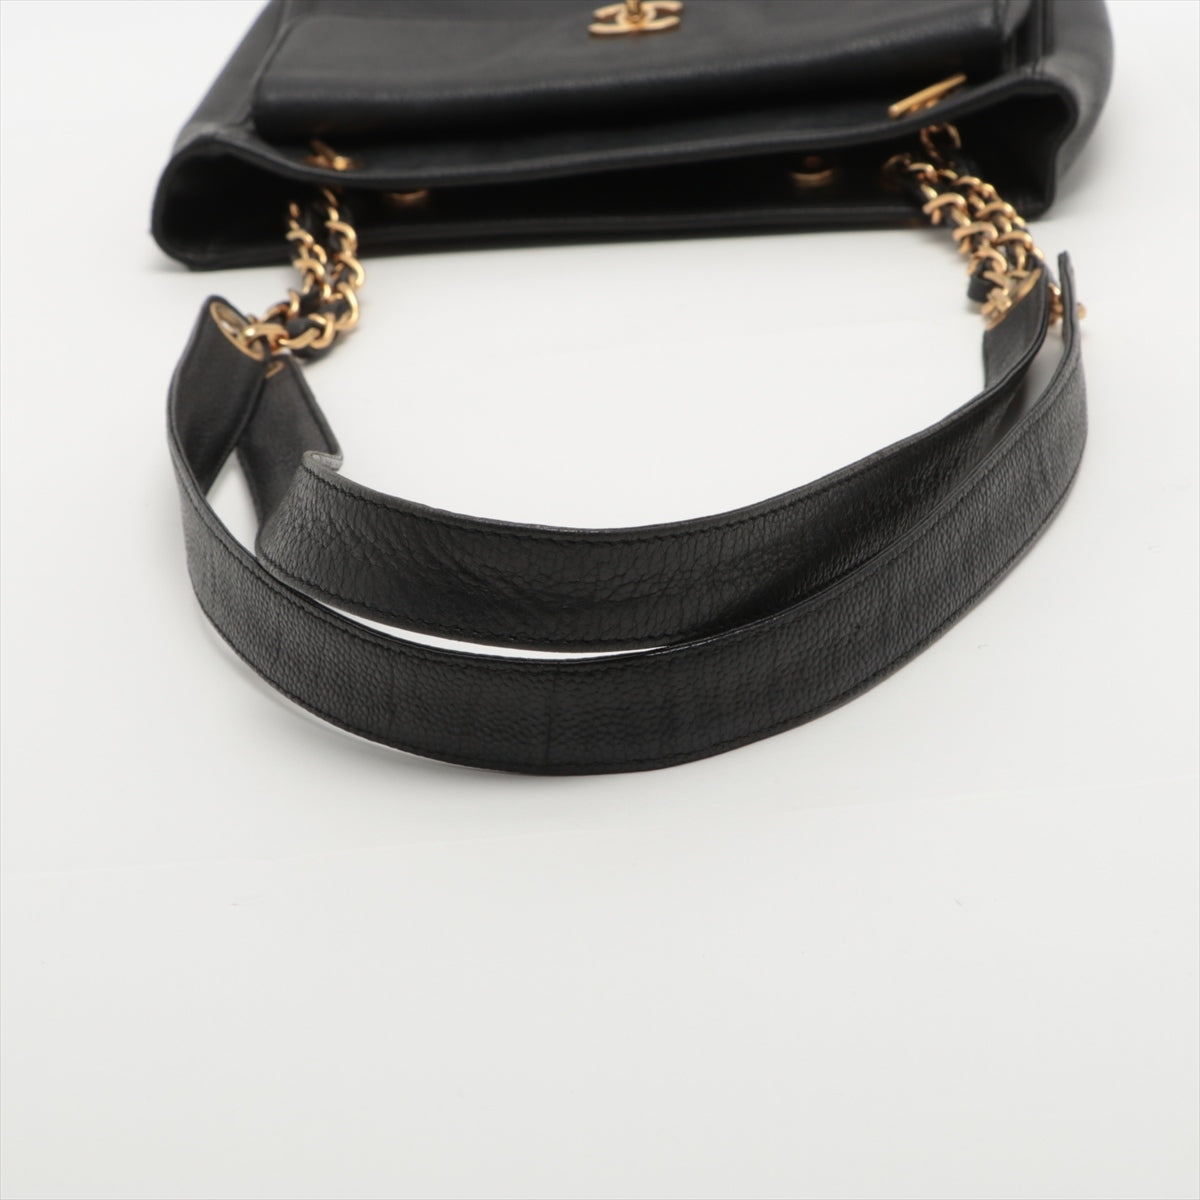 Chanel Coco Caviar S Tote Bag Black Gold  4th